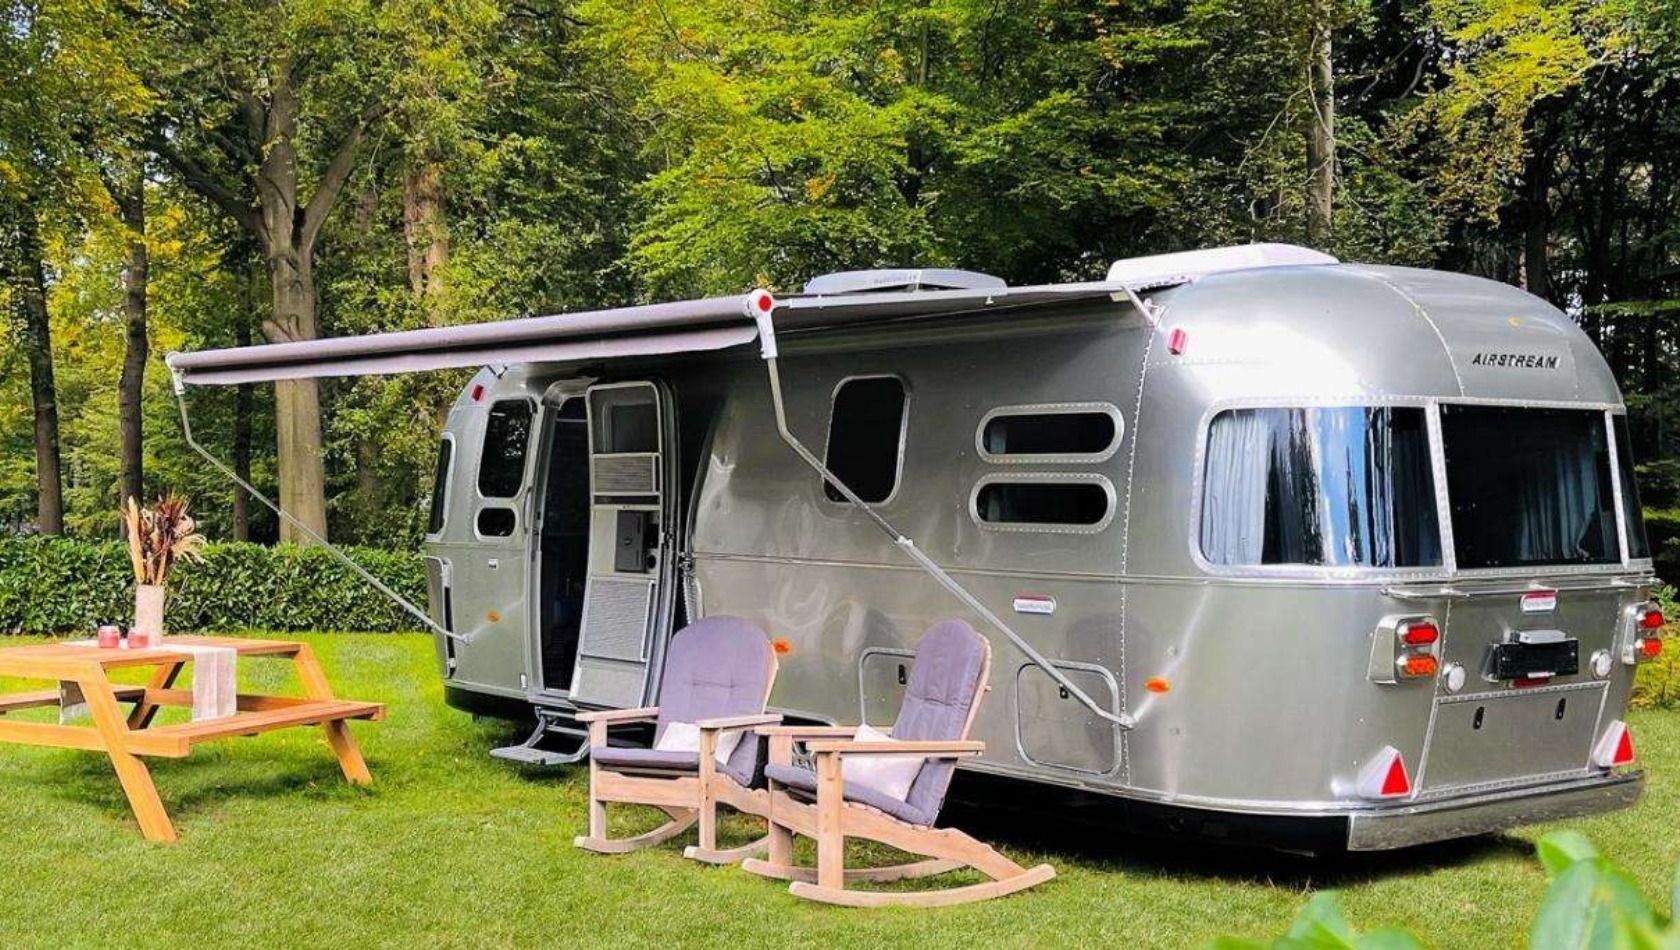 Die ikonischen Airstream-Campingwagen im Ferienpark Duinrell